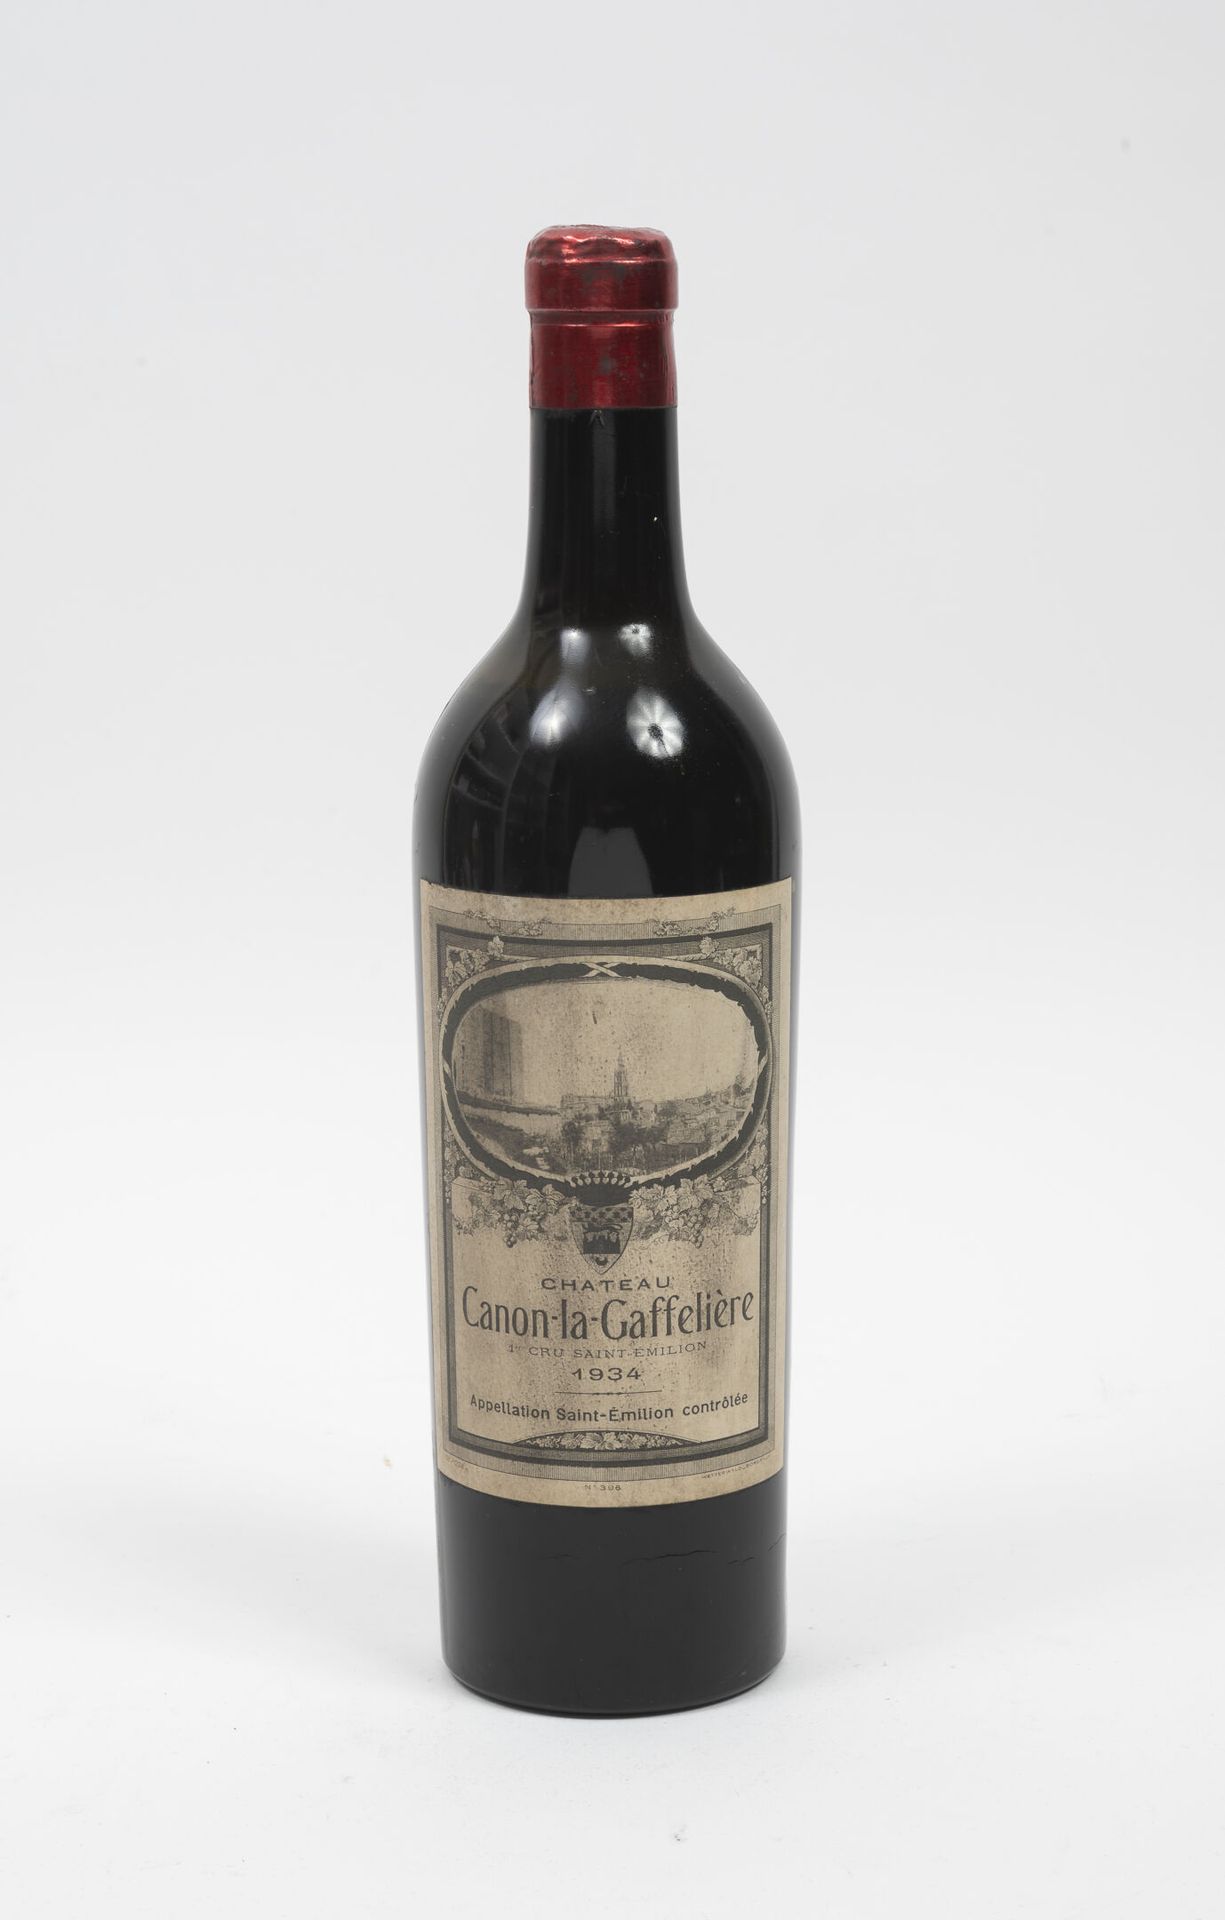 CHÂTEAU CANON-LA-GAFFELIERE 1 bottle, 1934.

Mid-shoulder to low-shoulder level.&hellip;